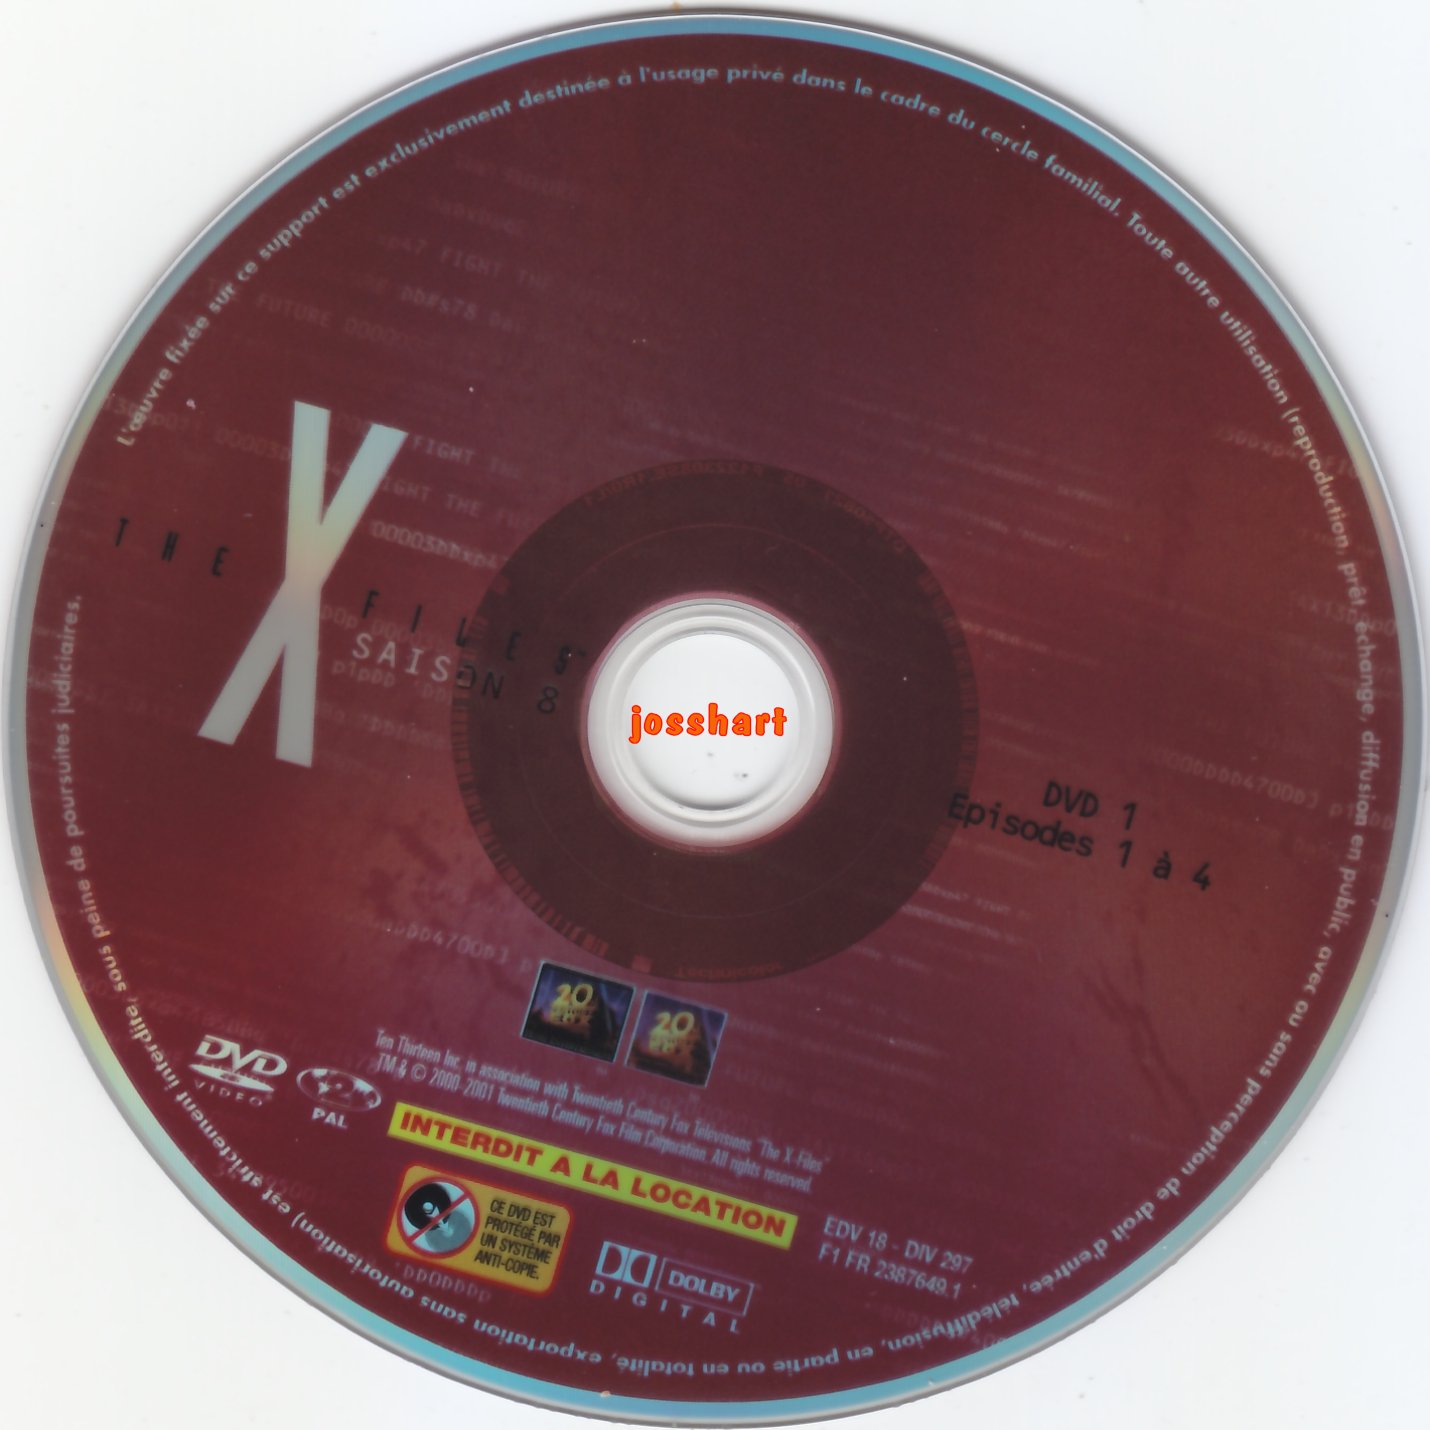 The X Files Saison 8 DVD 1 v2